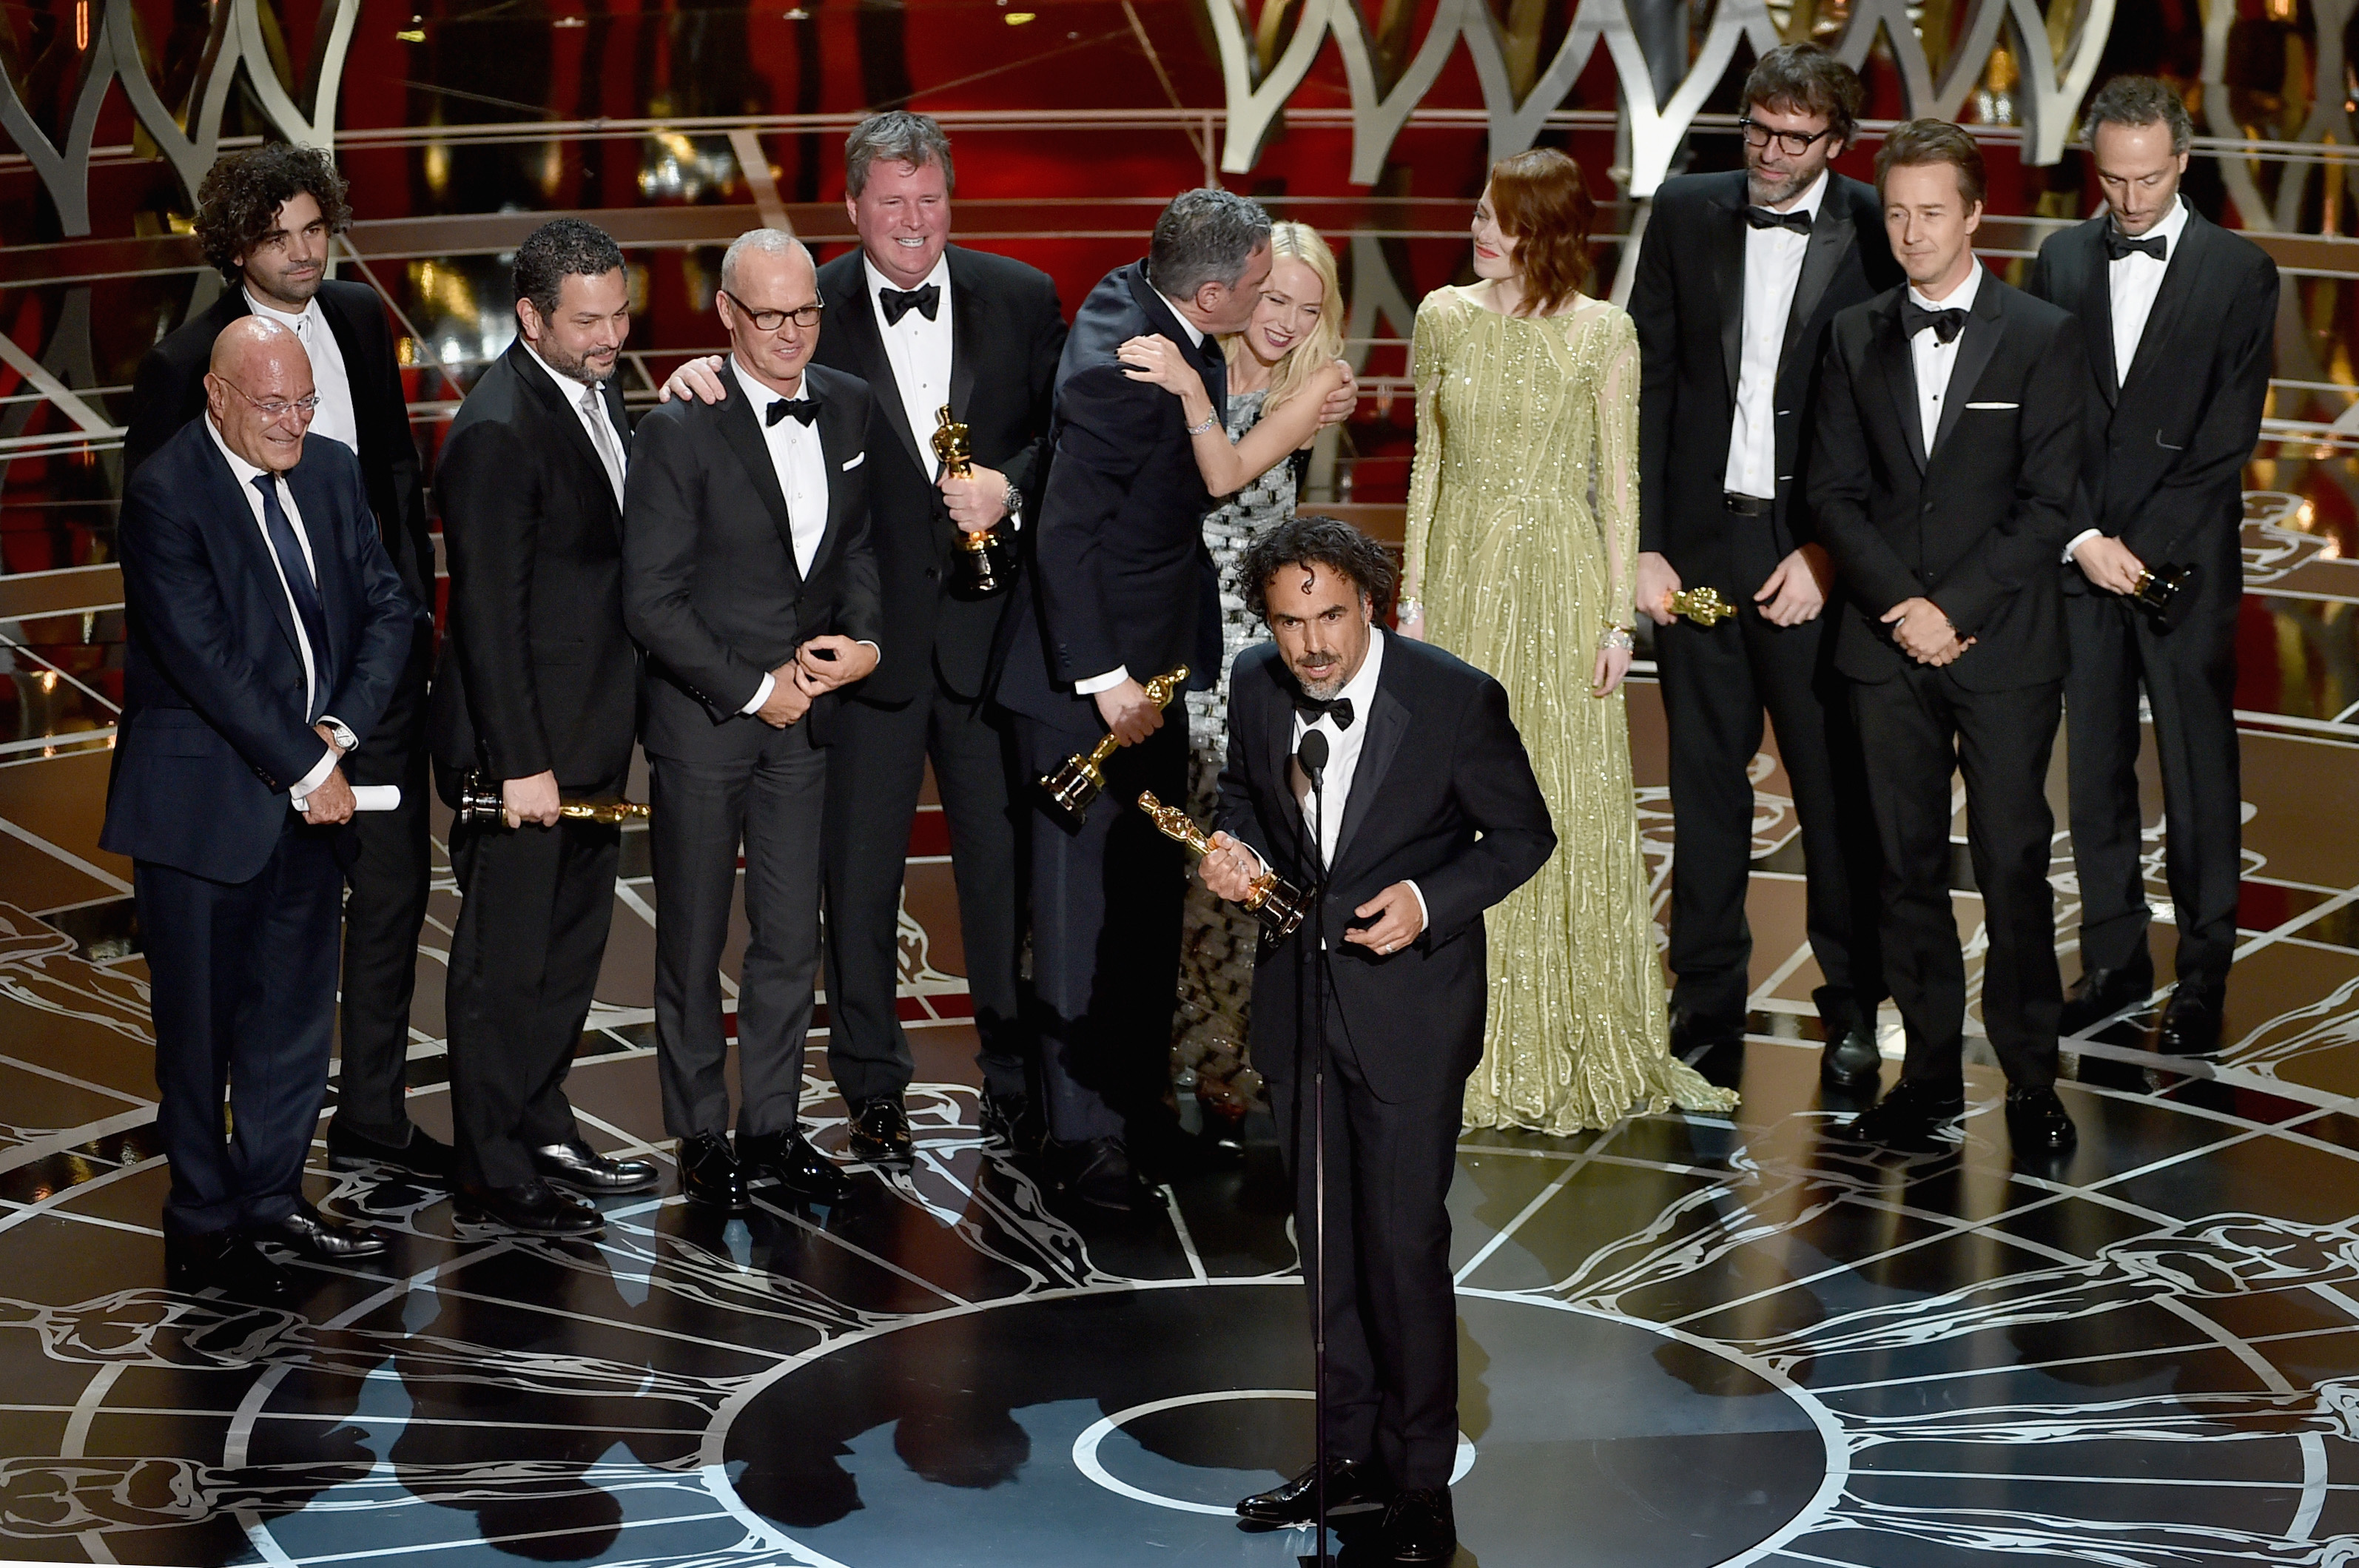 Алехандро Гонсалес Иняриту държи наградата за Най-добър филм за ”Бърдмен”